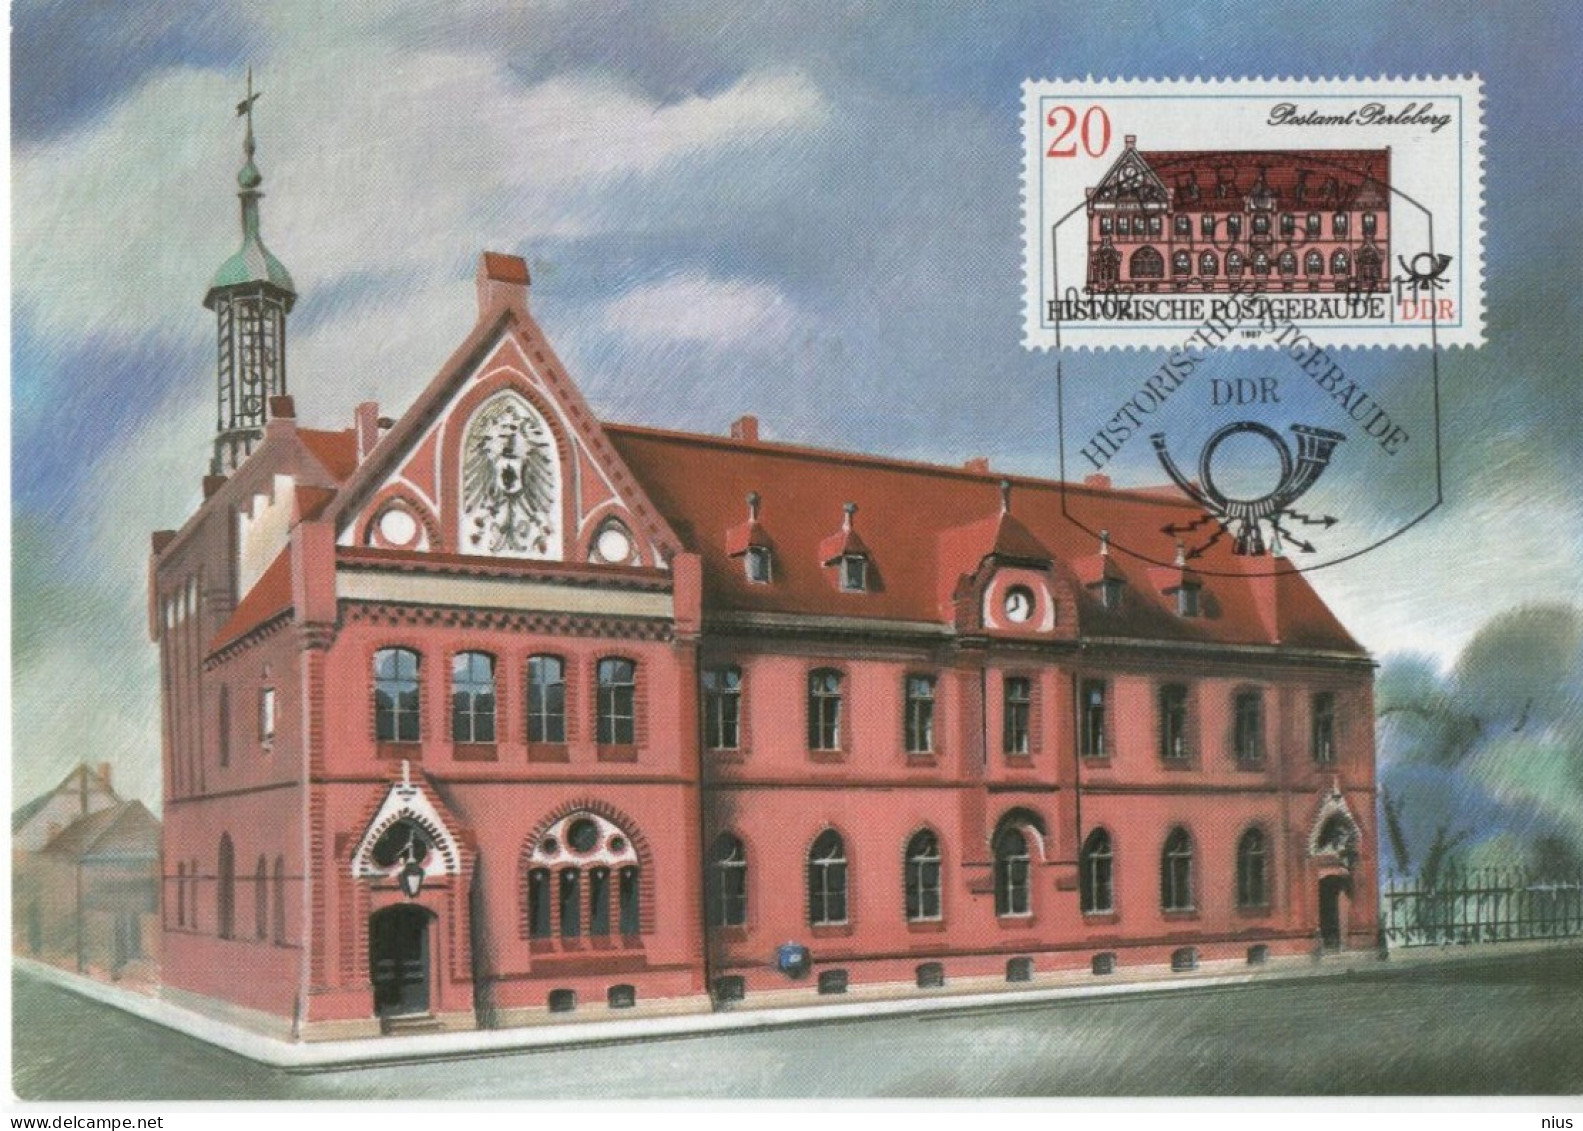 Germany Deutschland DDR 1987 Maximum Card Historische Postgebaude Historic Post Office Building Postamt Perleberg Berlin - Maximumkarten (MC)